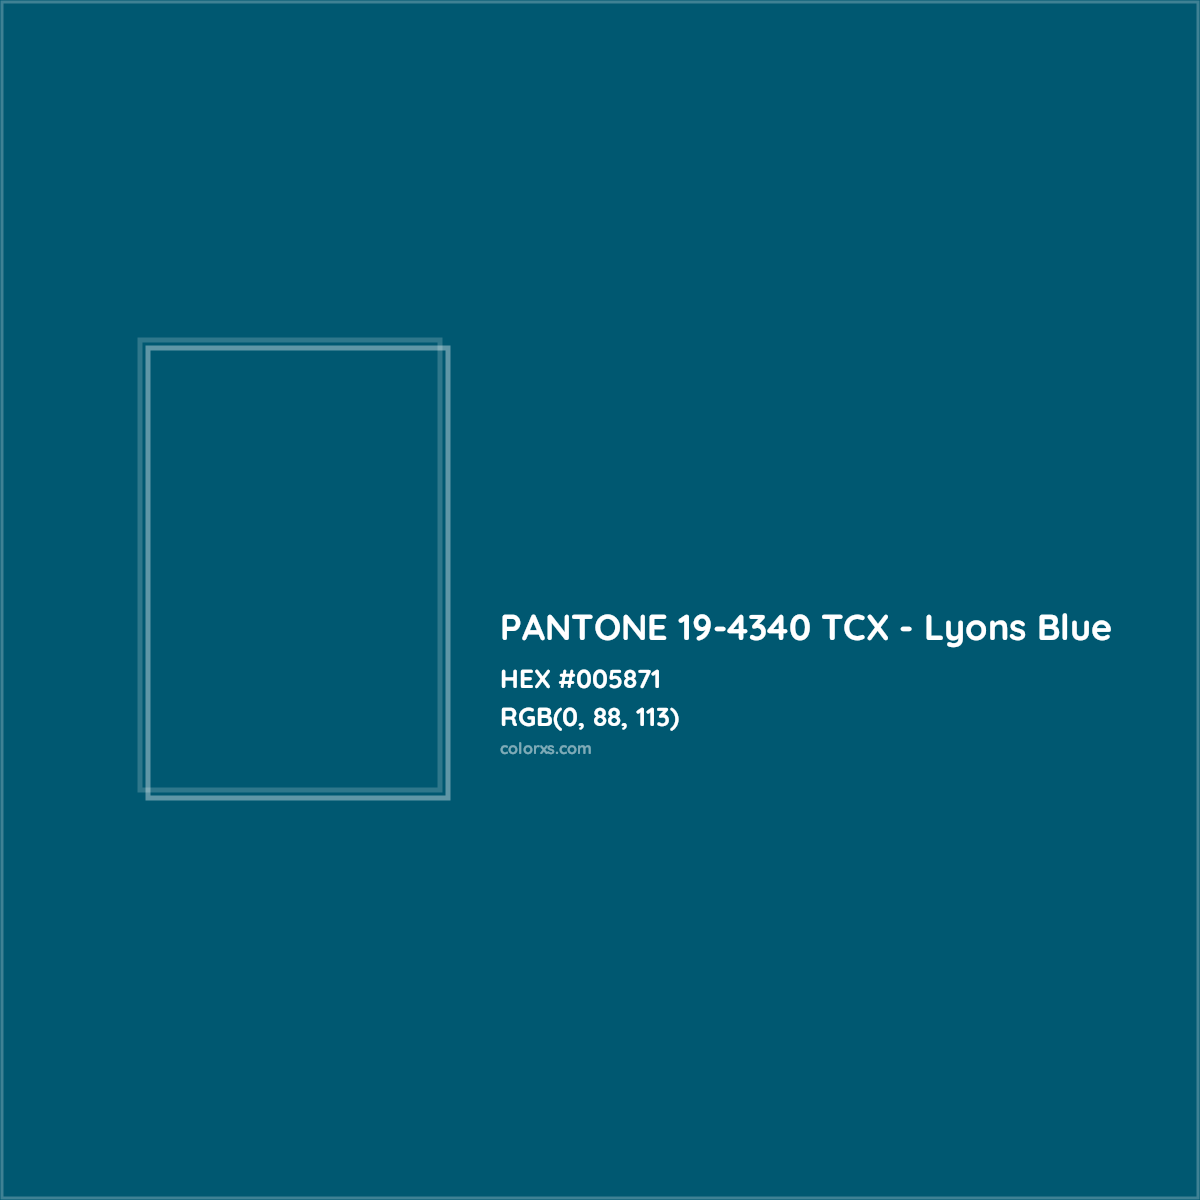 HEX #005871 PANTONE 19-4340 TCX - Lyons Blue CMS Pantone TCX - Color Code